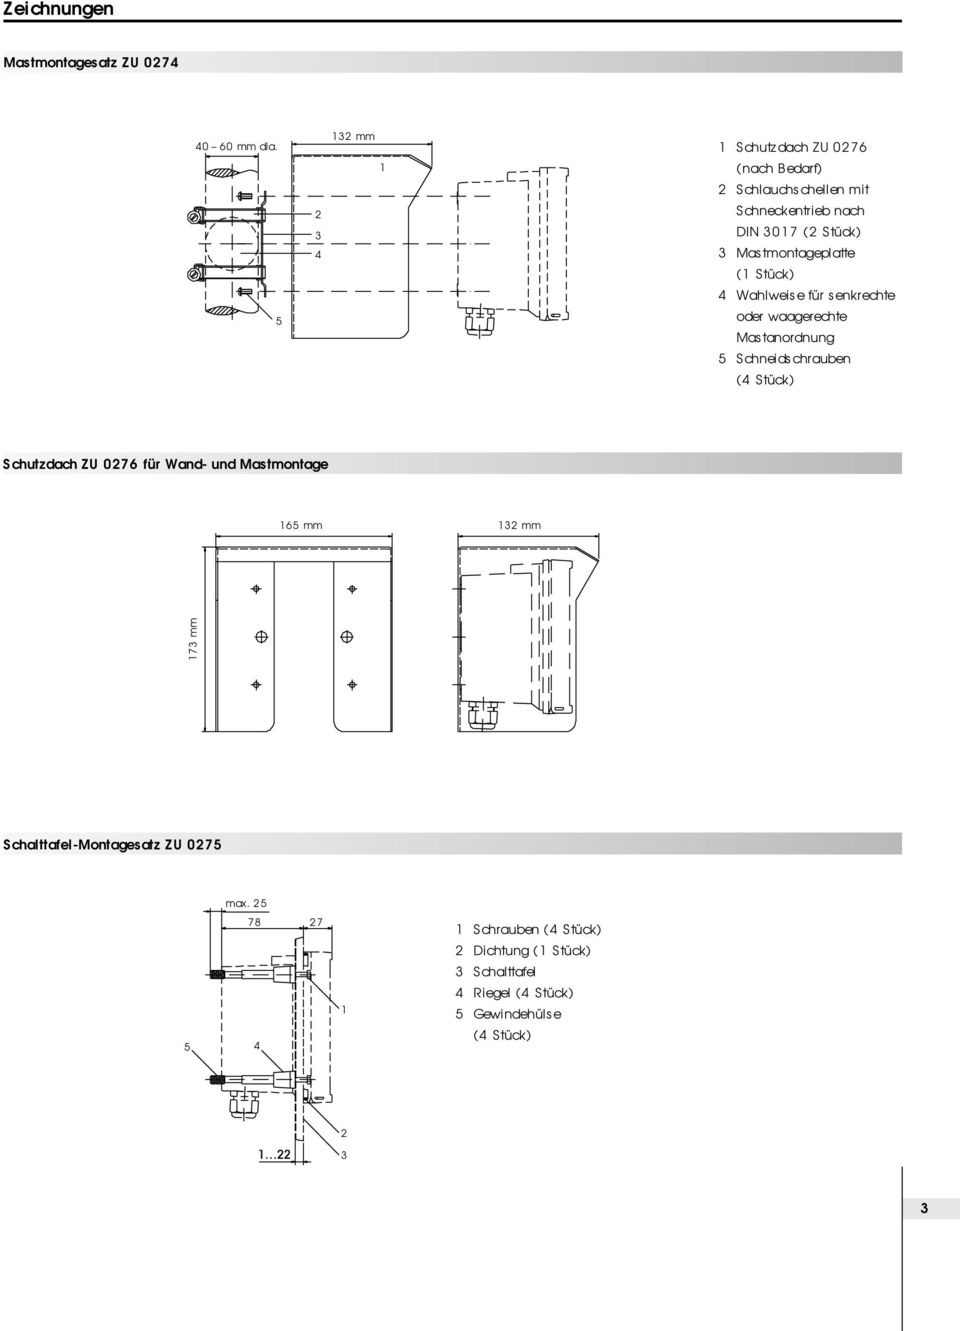 Mastmontageplatte (1 Stück) 4 Wahlweise für senkrechte oder waagerechte Mastanordnung 5 Schneidschrauben (4 Stück) Schutzdach